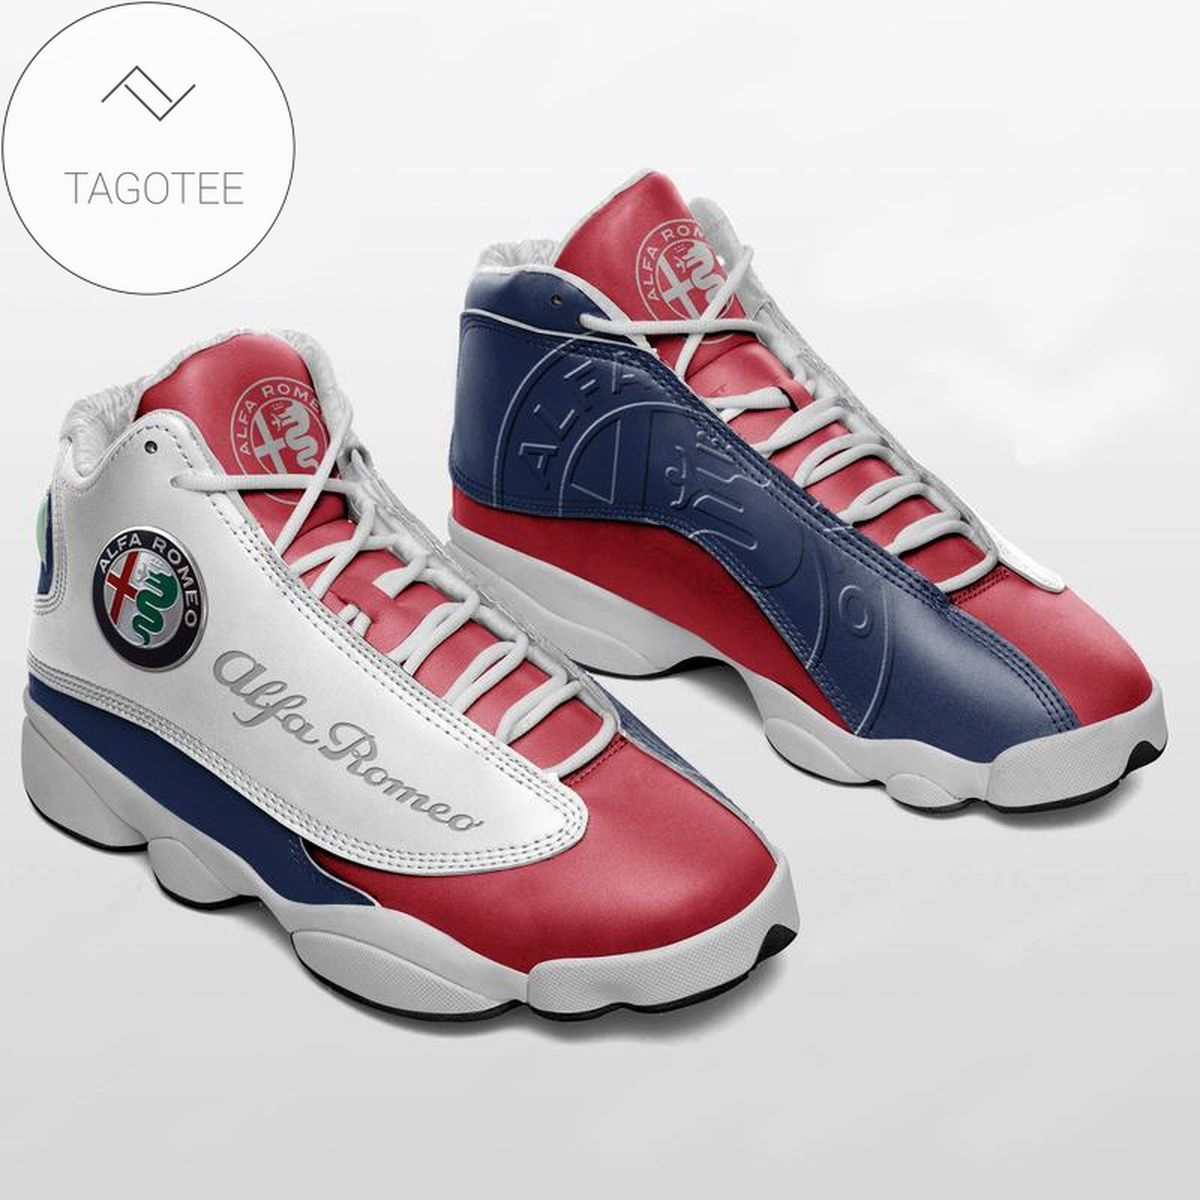 Alfa Romeo Air Jordan 13 Shoes For Fan Sneakers Football Team Sneakers